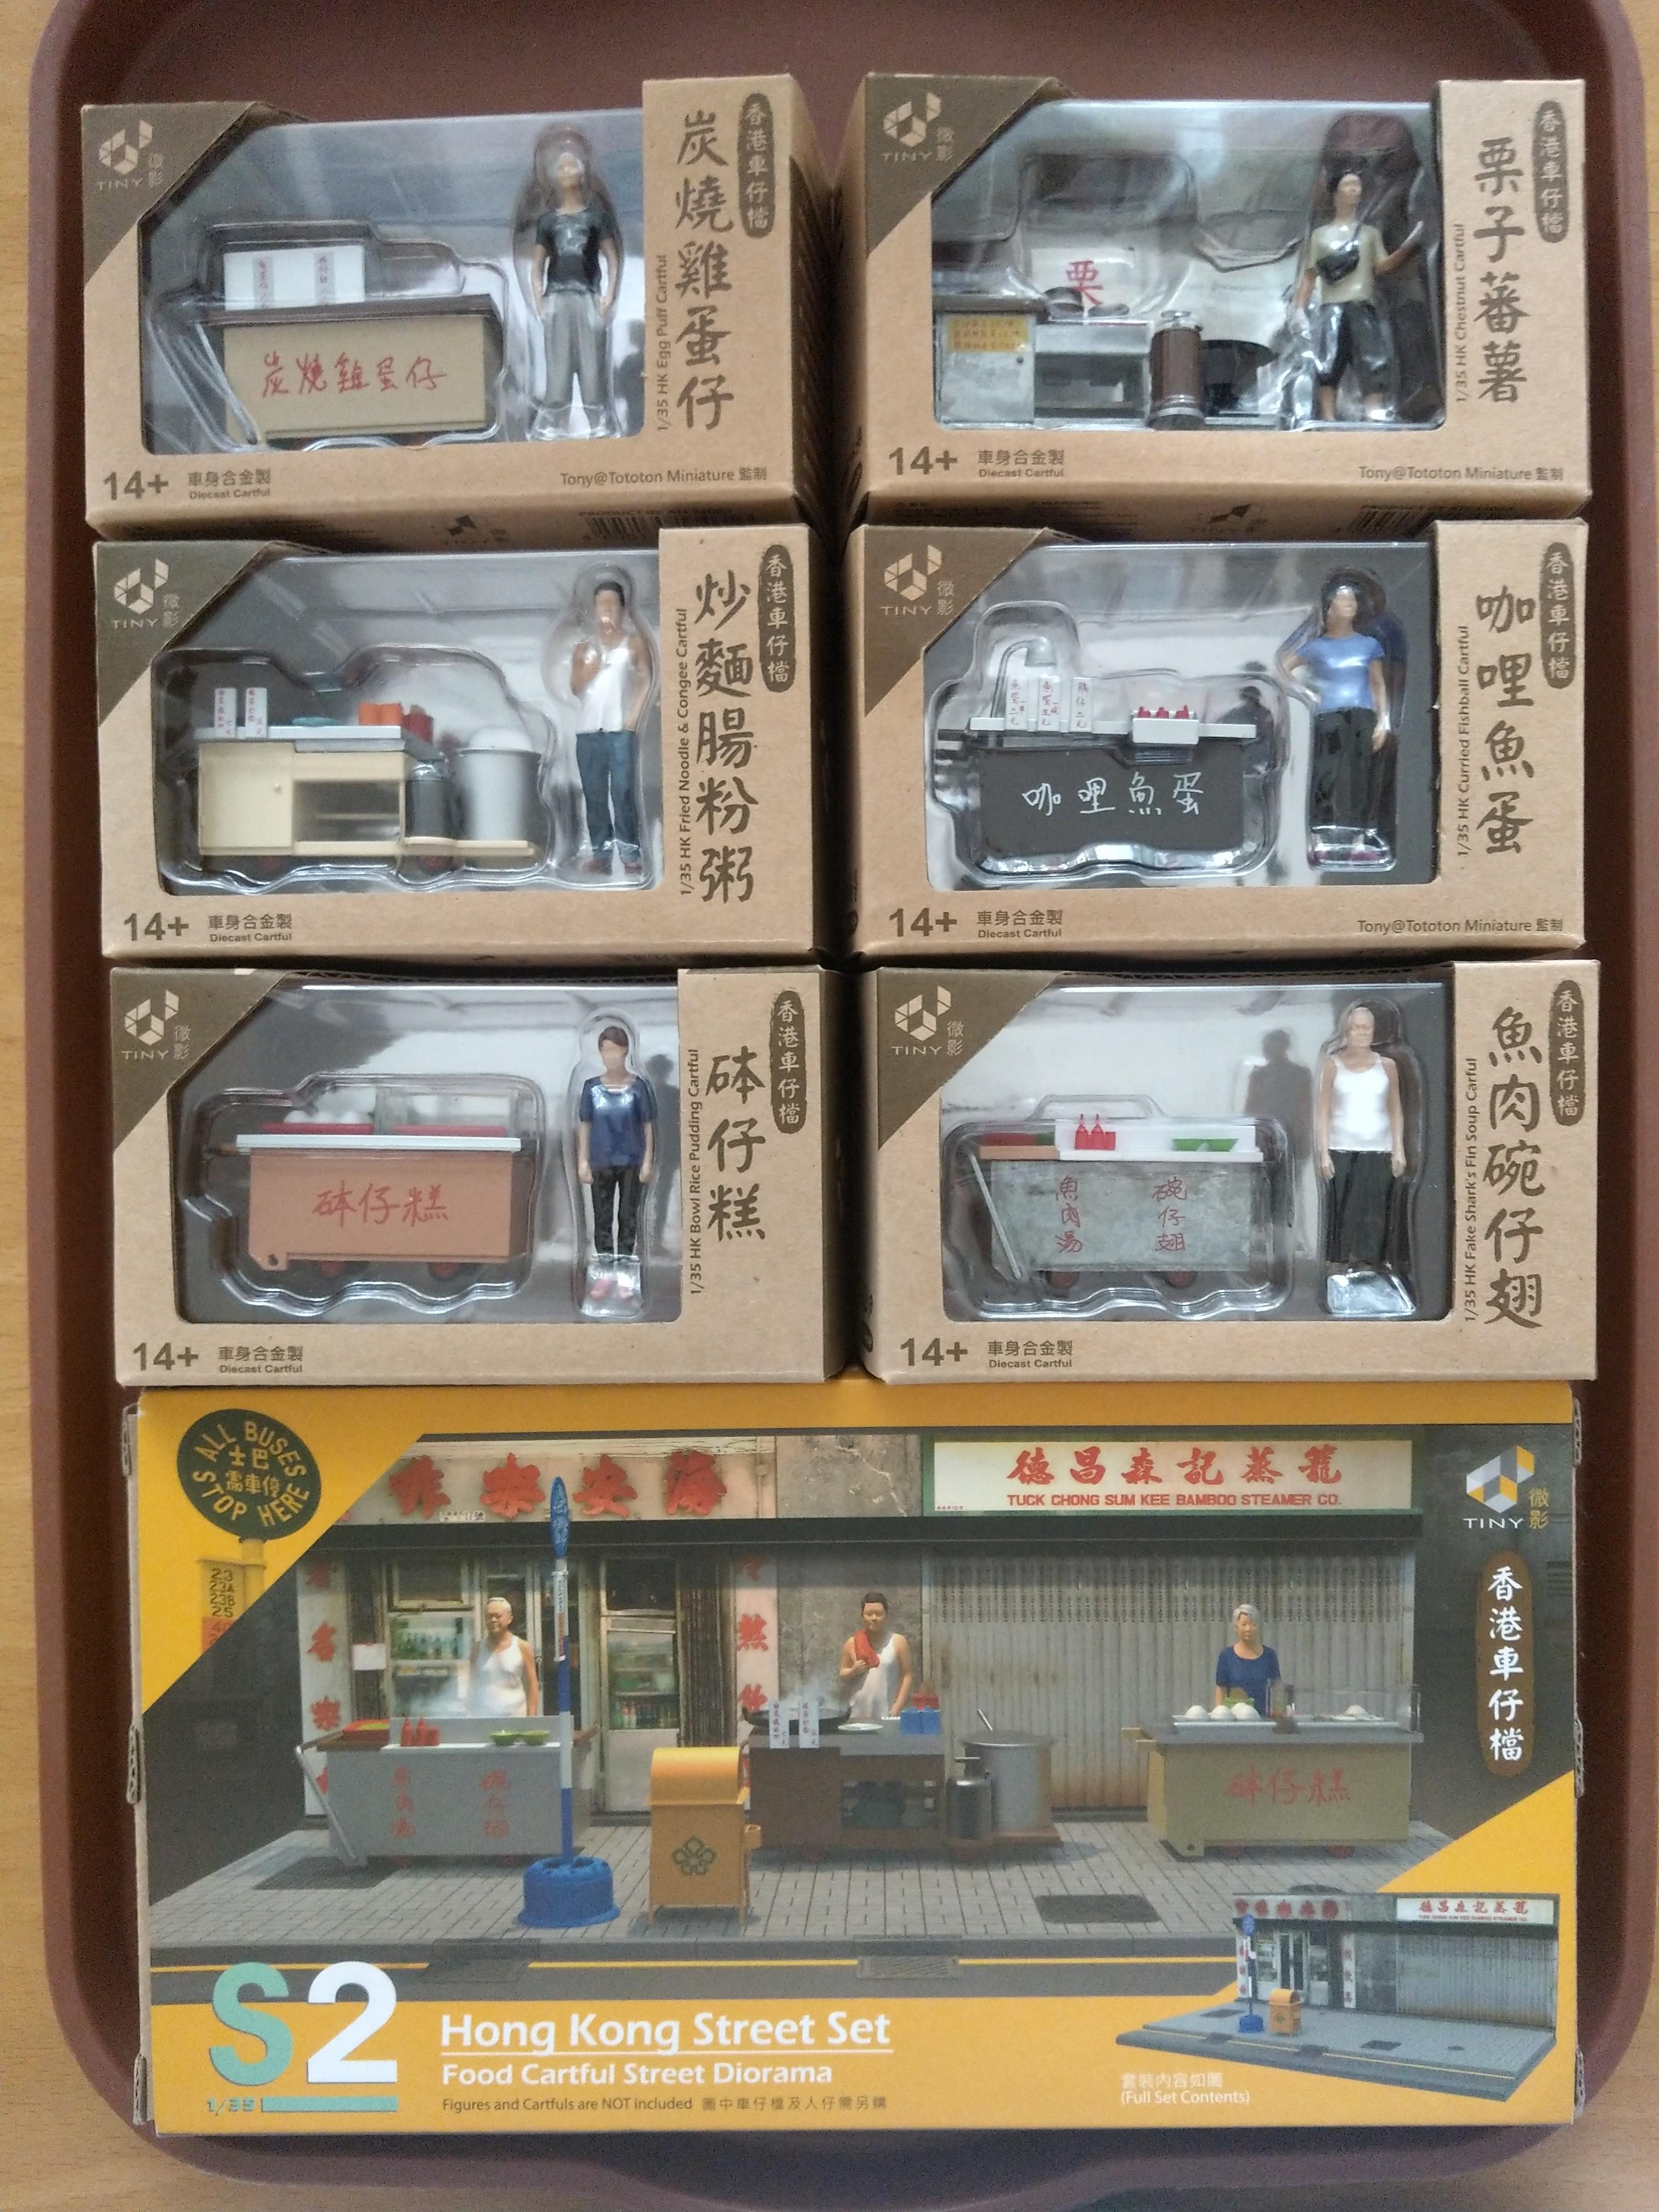 Tiny 微影香港情懷經典車仔檔系列模型全套S2, 1/35, 興趣及遊戲, 玩具